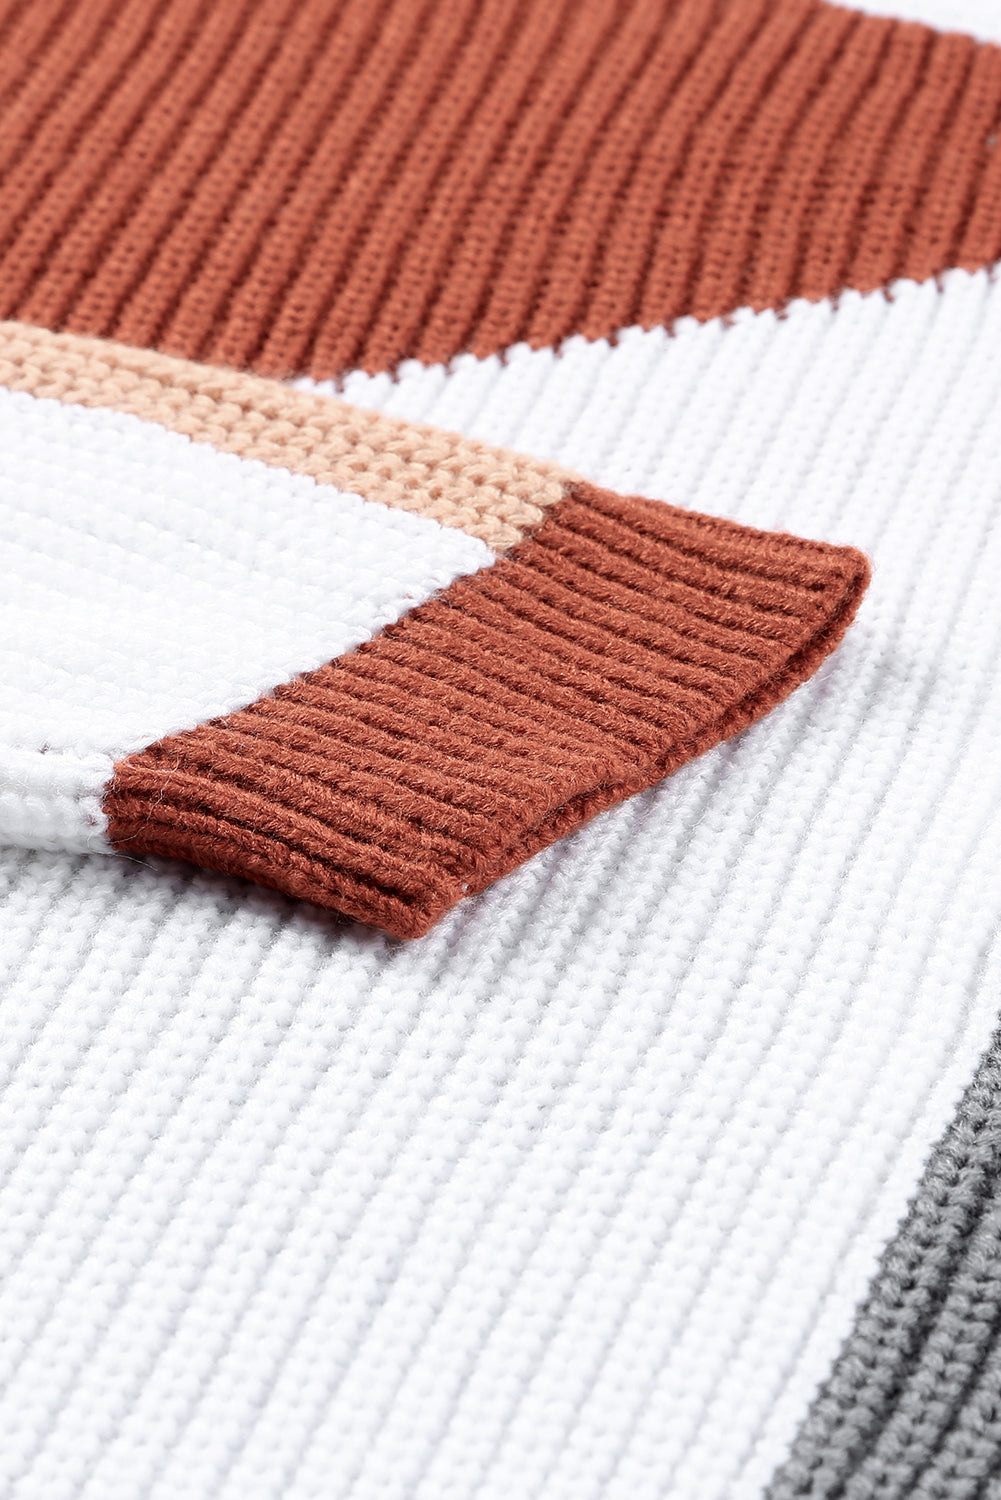 Večbarvni ohlapen pleten pulover v barvnih blokih